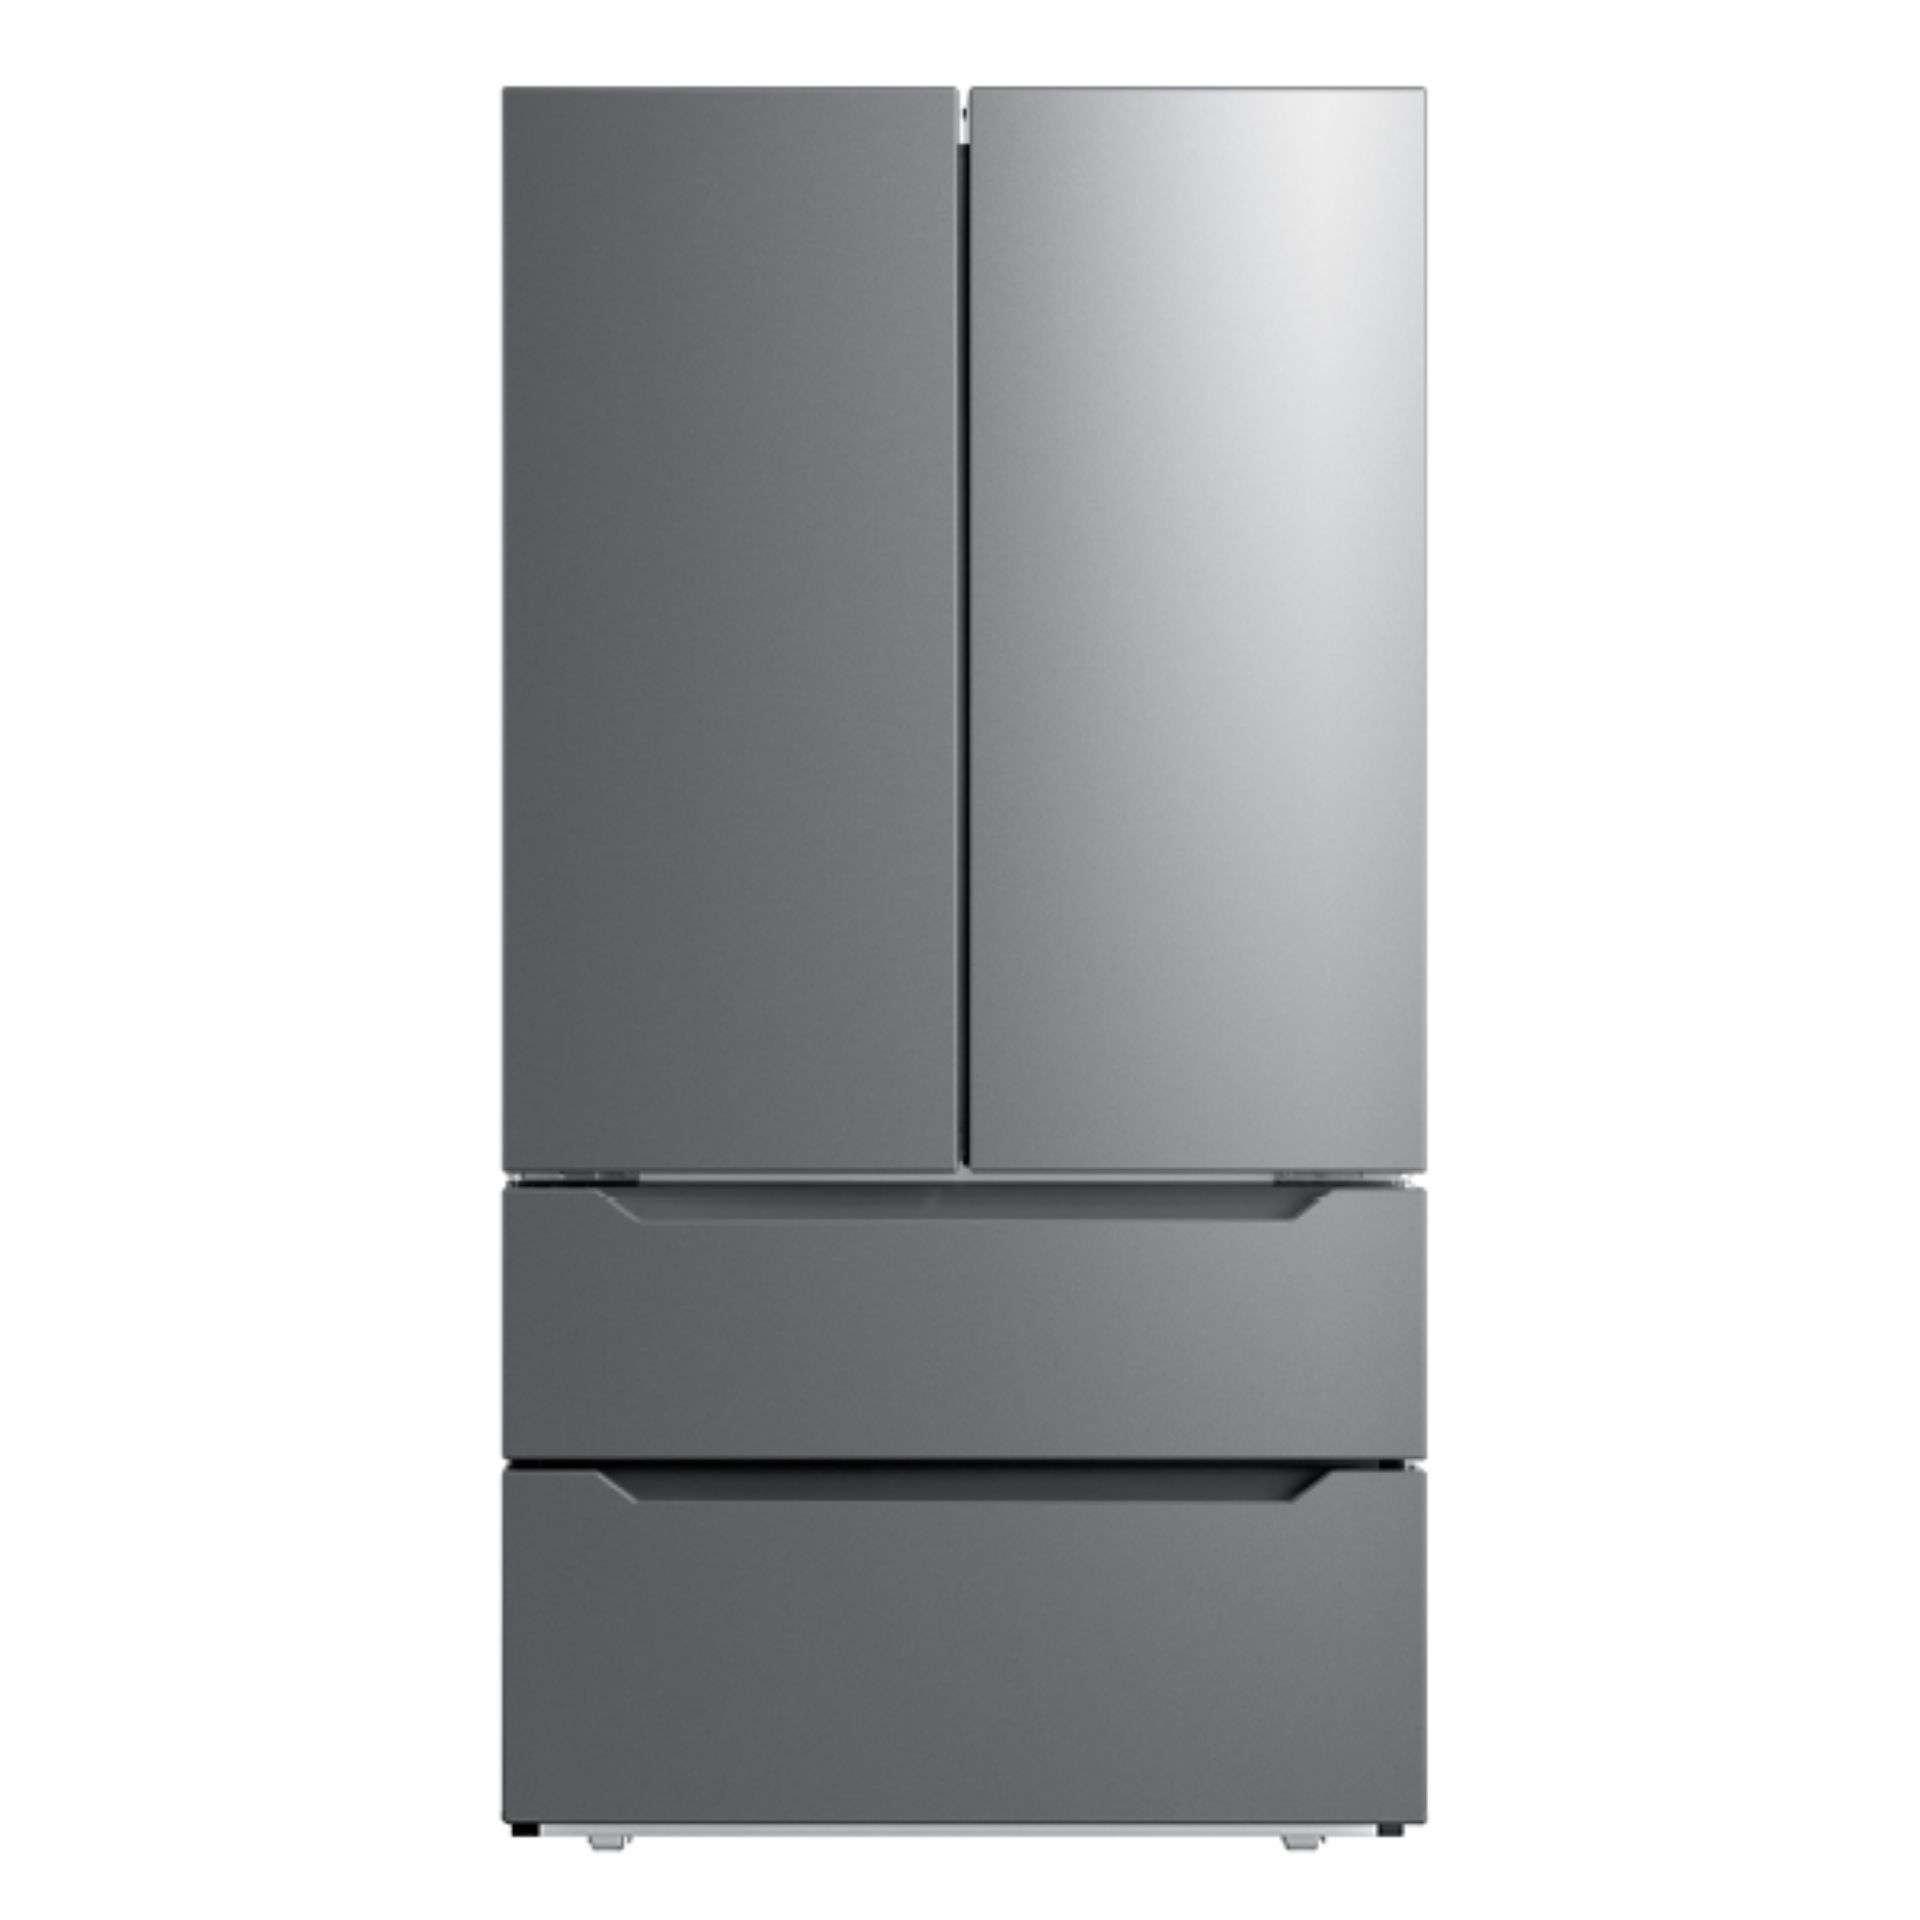 22.5 Cu. Ft. Counter-Depth 4-Door French Door Refrigerator